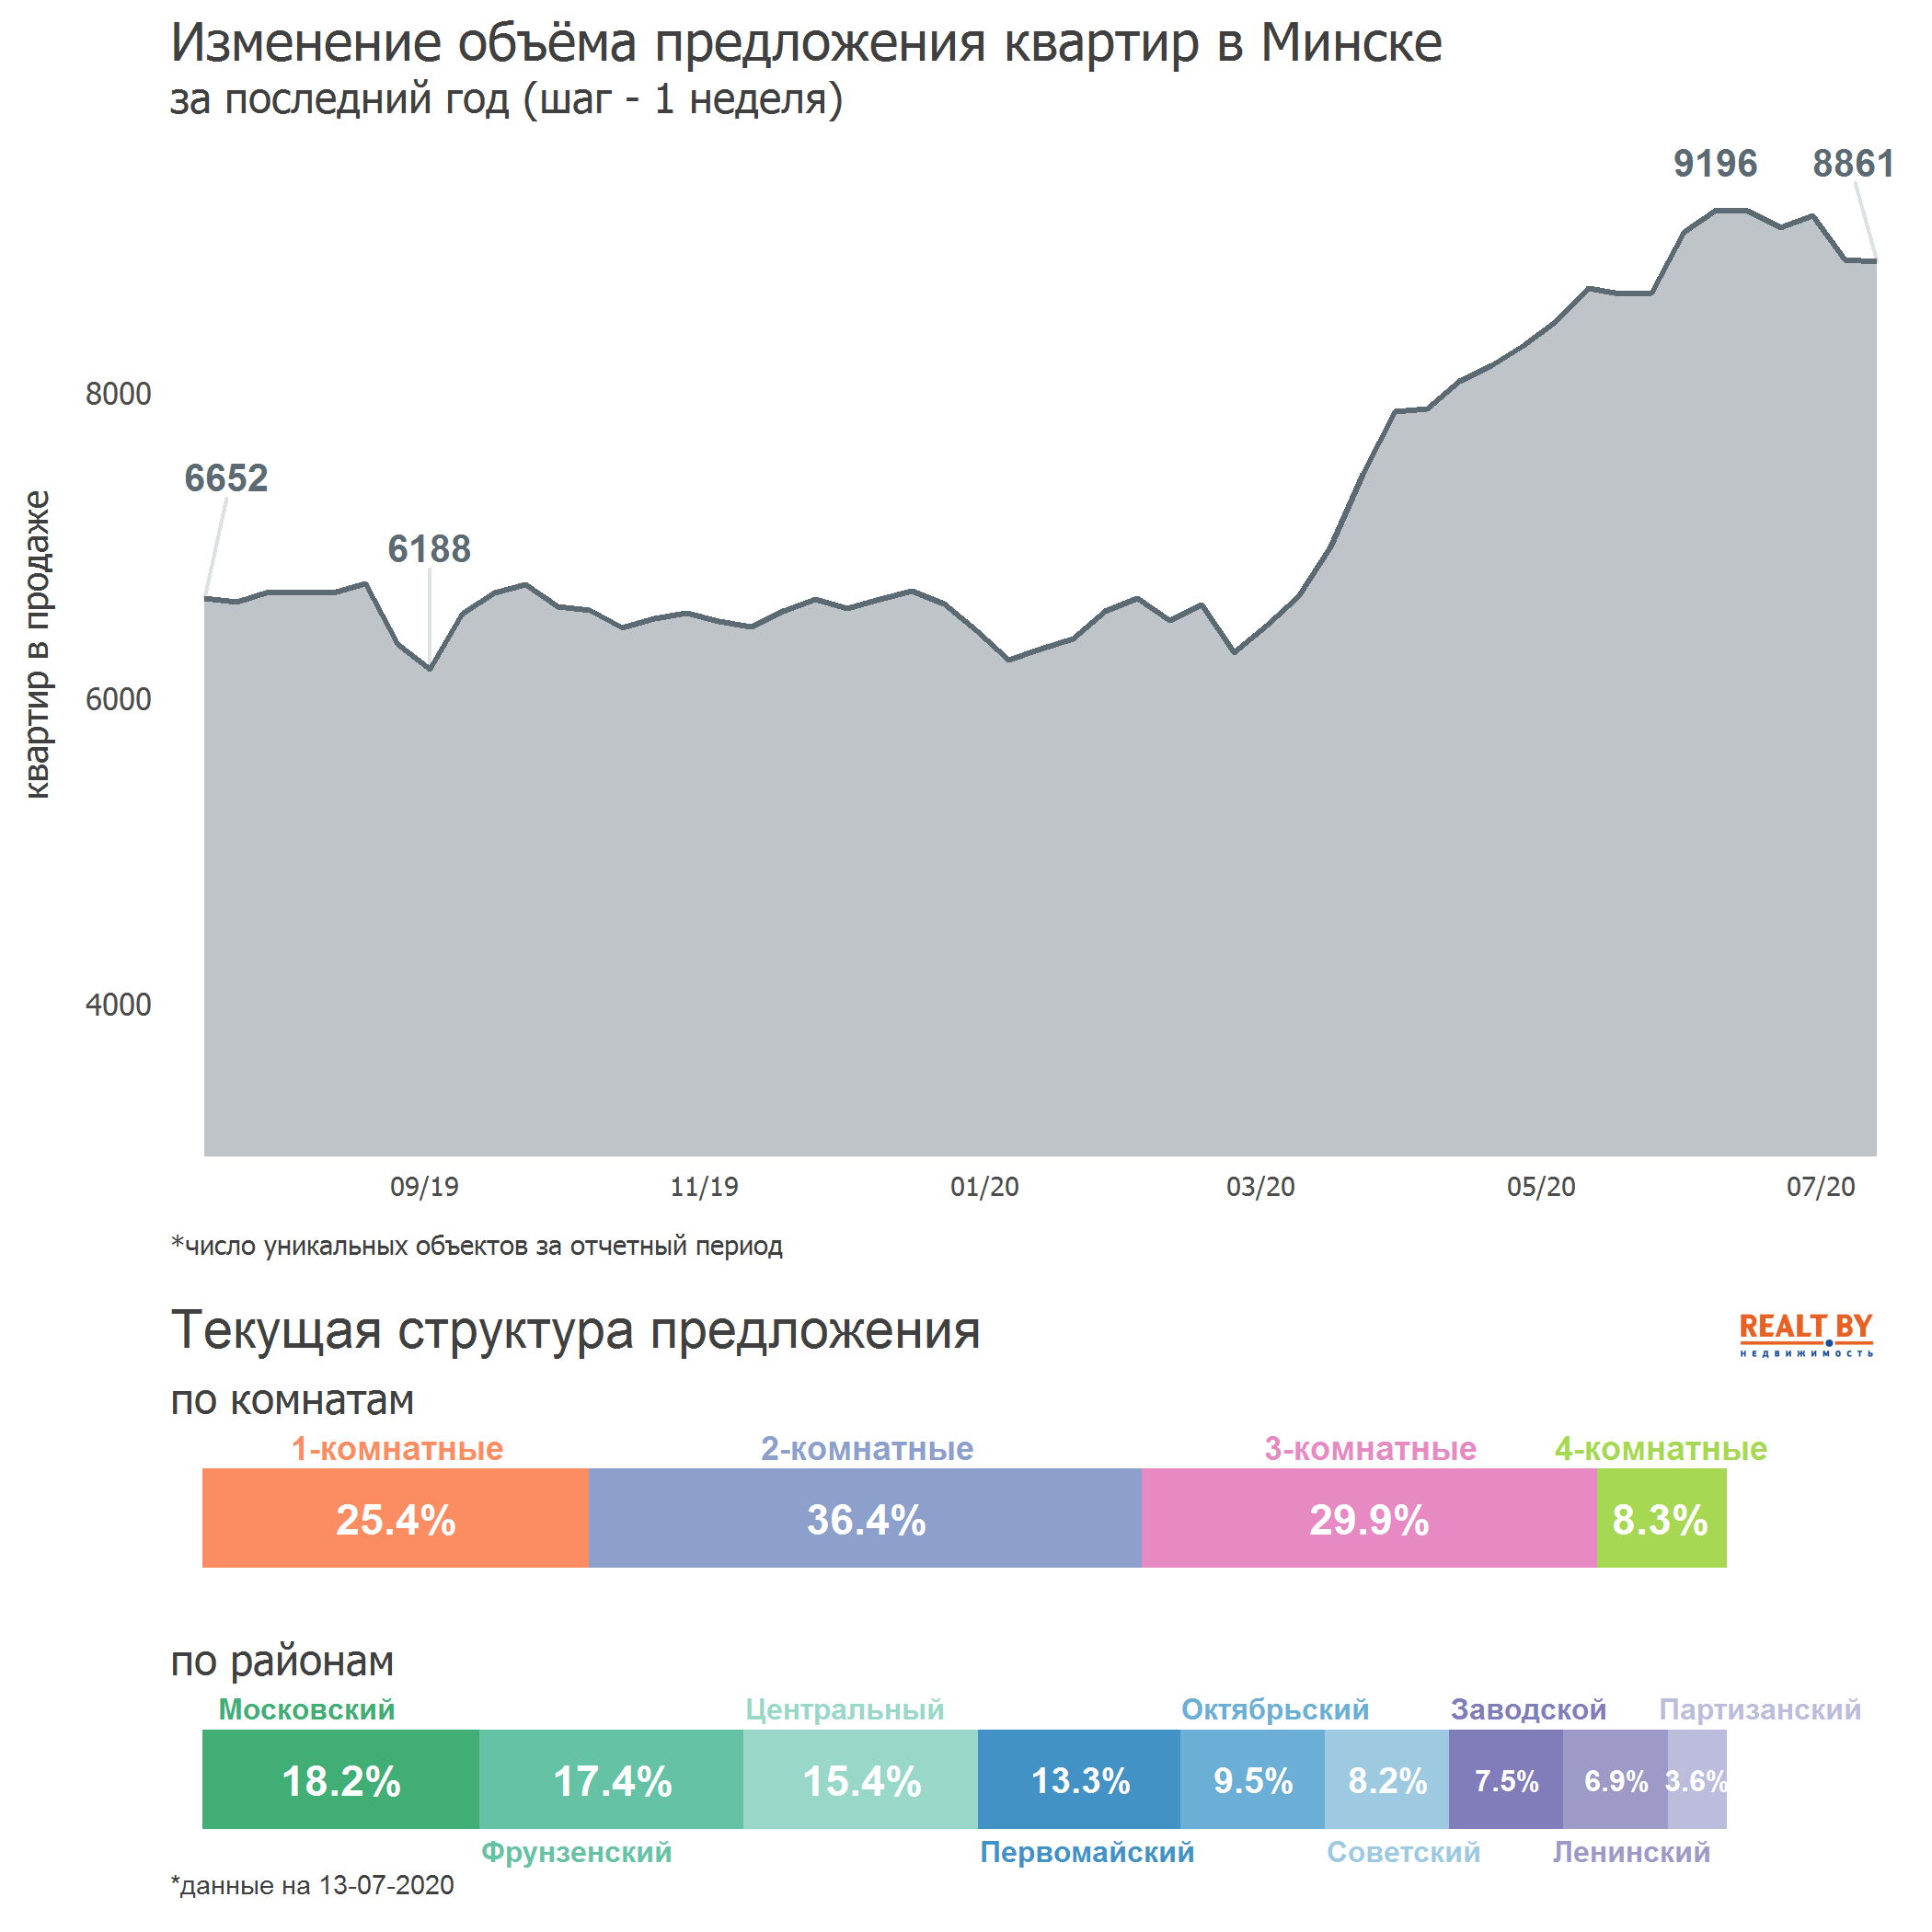 Мониторинг цен предложения квартир в Минске за 6-13 июля 2020 года